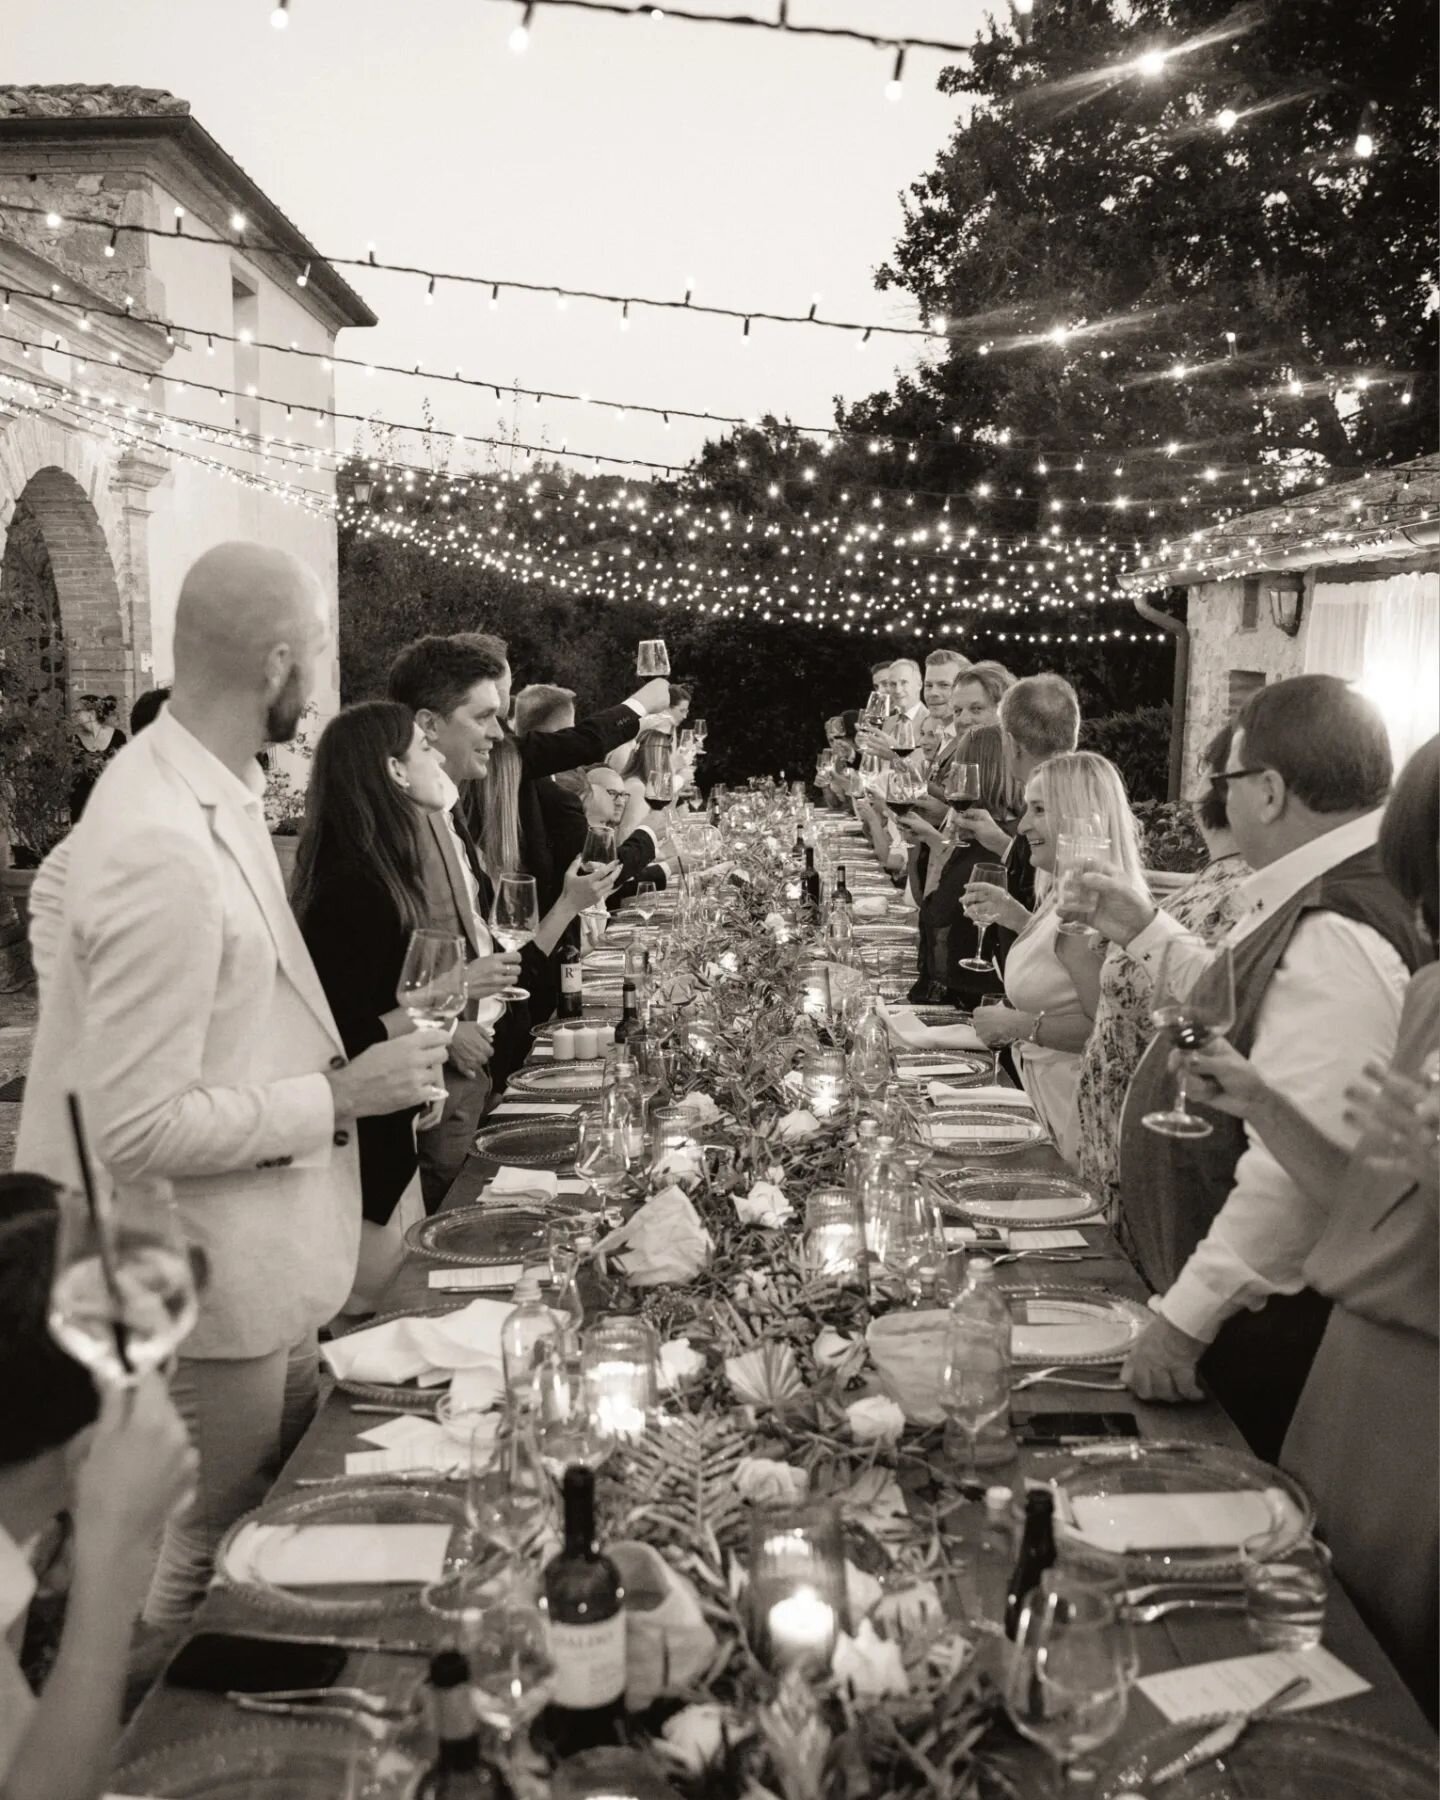 Olivia &amp; Tom 💫
.
.
.
#photographers #photographysiena #sienaitaly #sienatuscany #sienaphoto #weddingphotoshoot #tuscanyweddingphoto #wedding2024 #justmarriedcouple #italy #tuscanyphotographer #tuscanyphoto #tuscanyphotos #sienaphotographer #wedd